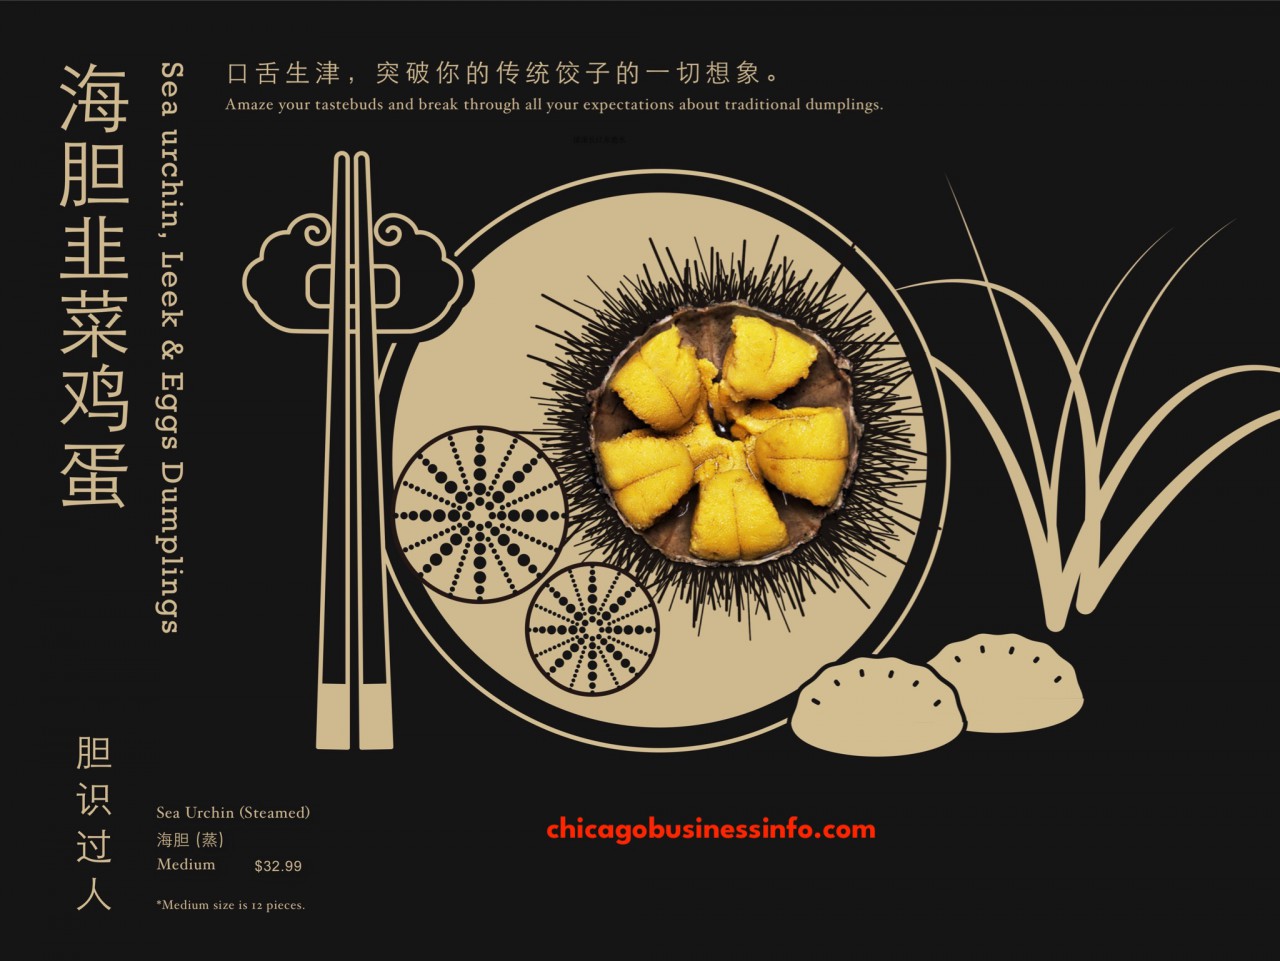 Qing Xiang Yuan Dumplings Chicago Menu 15